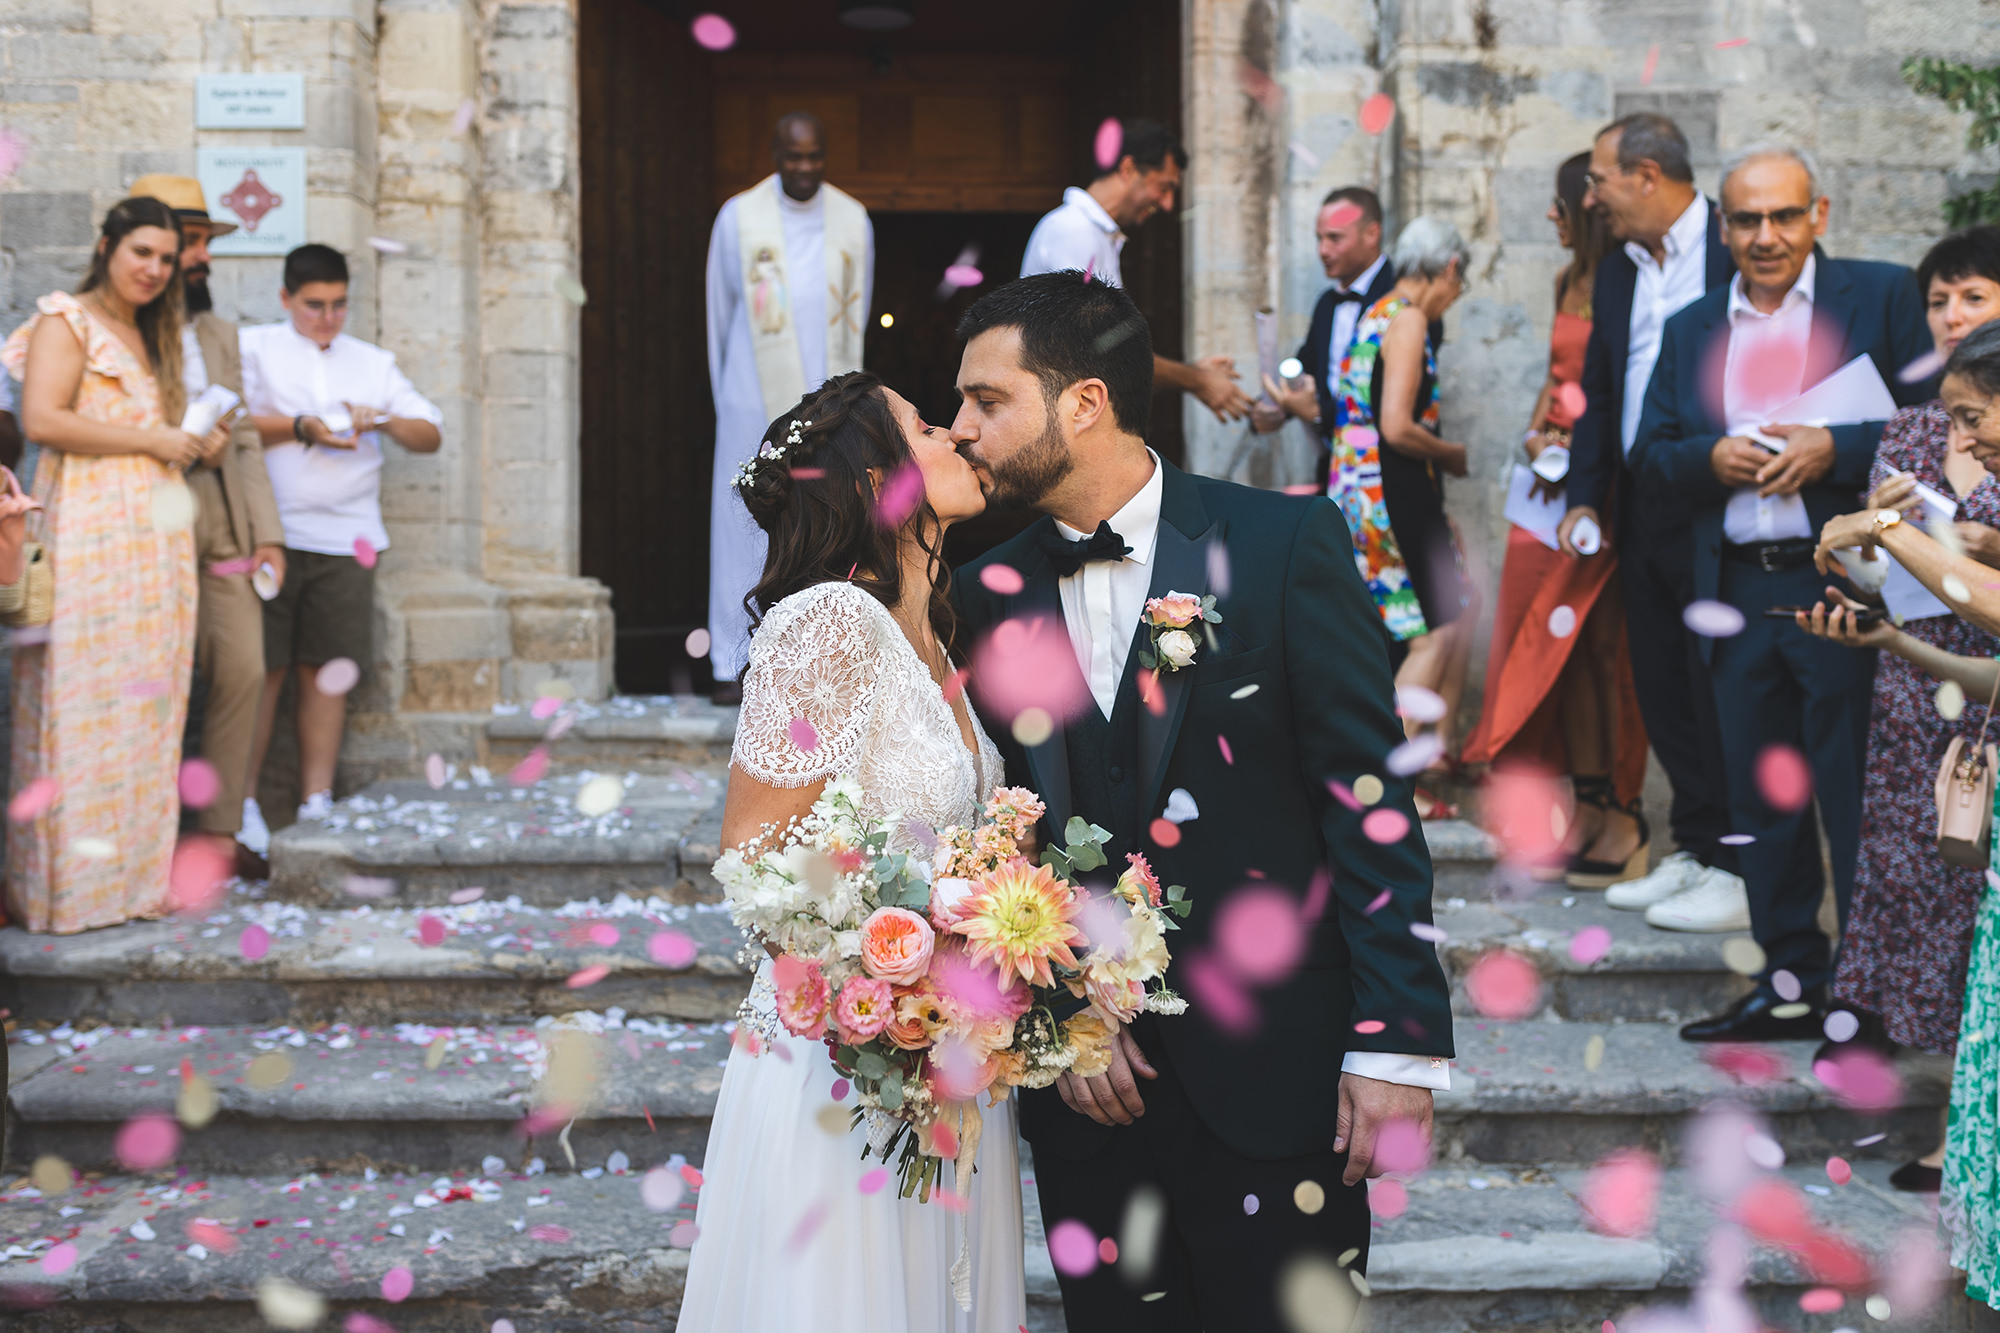 Sortie d'église sous les confettis pour un mariage dans le Var.